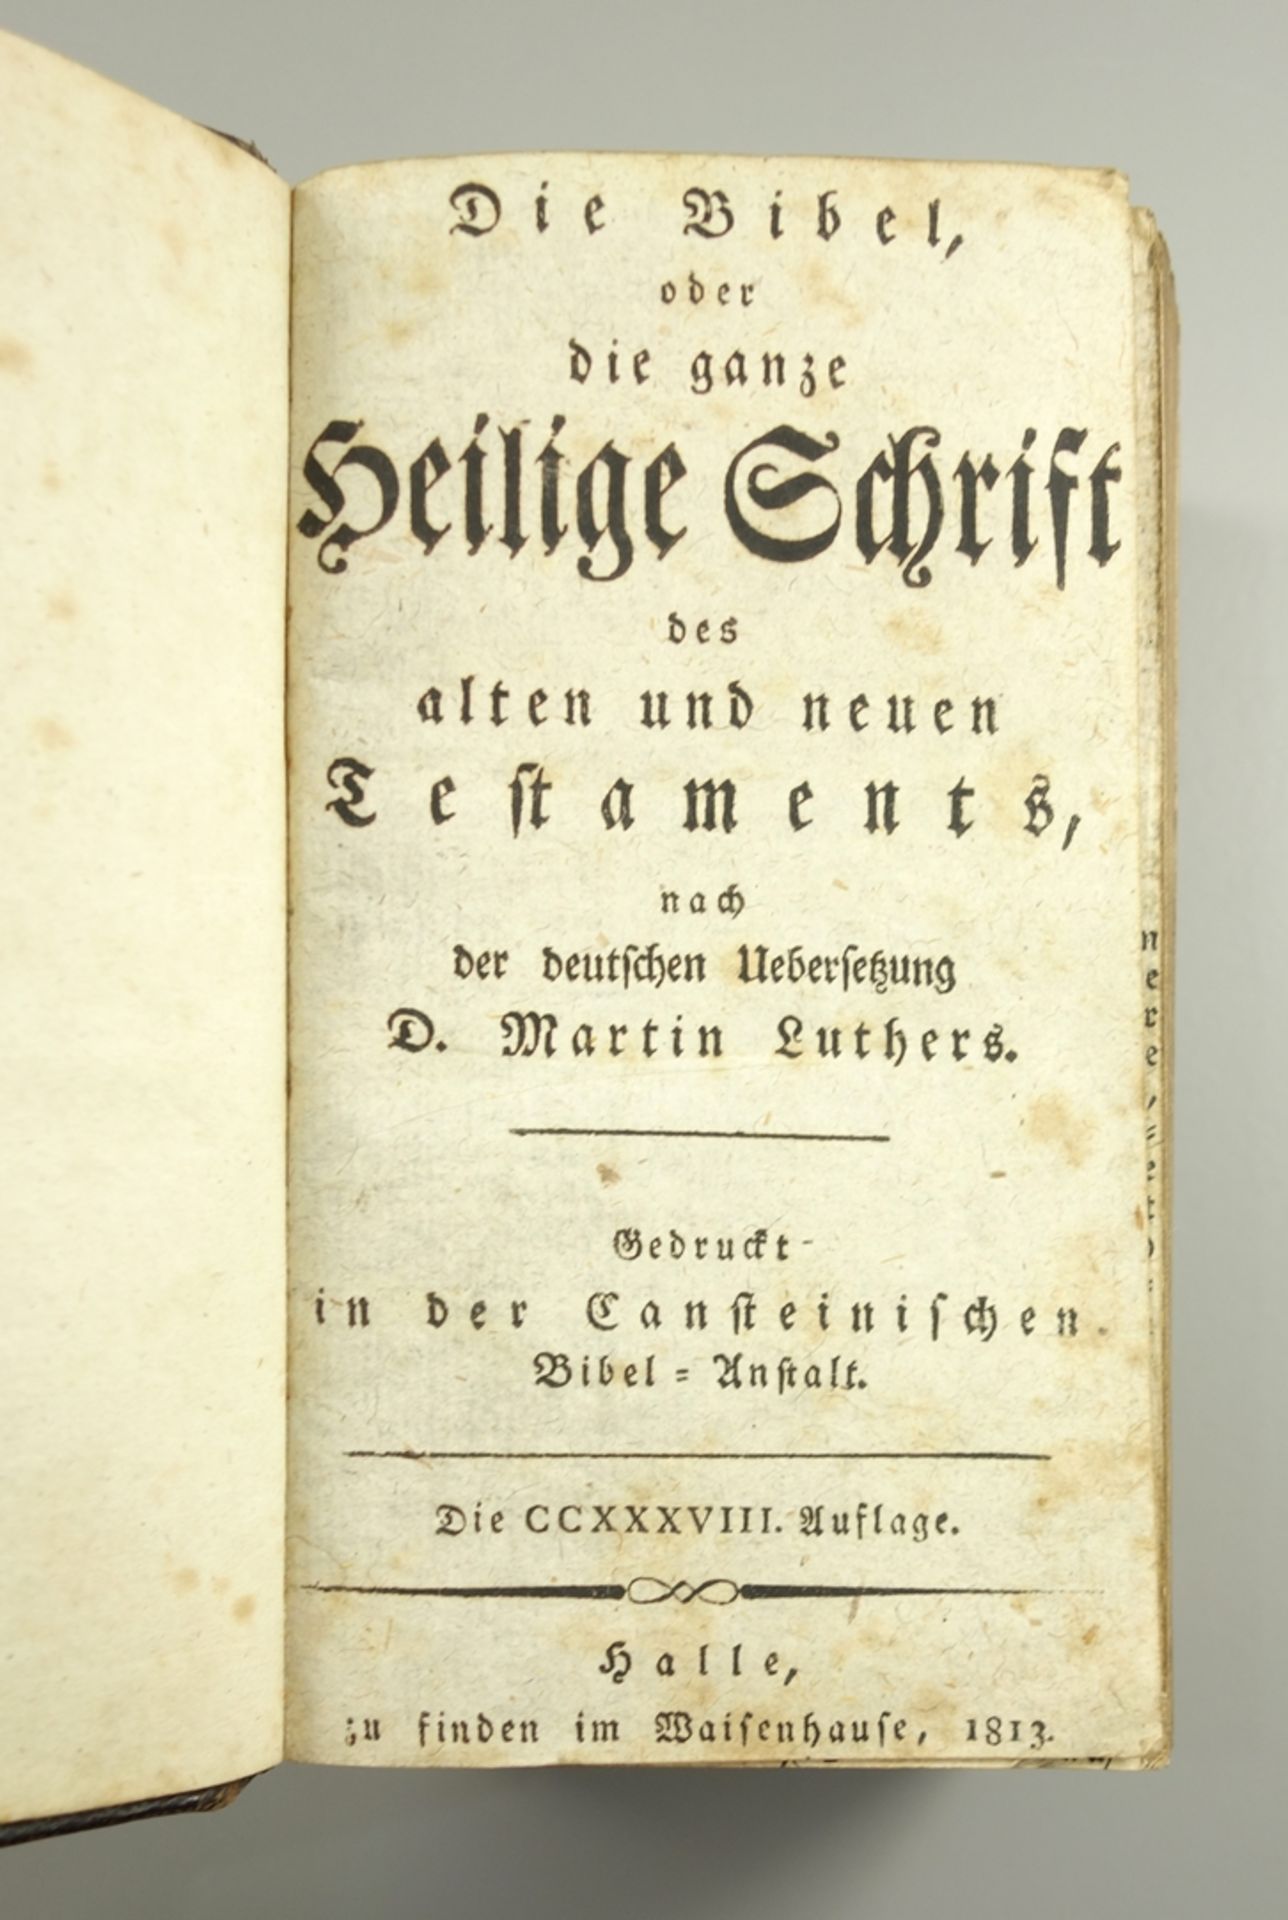 Die Bibel oder die ganze Heilige Schrift, Halle, 1813, 238.Auflage, Ledereinband mit geprägten - Image 2 of 2